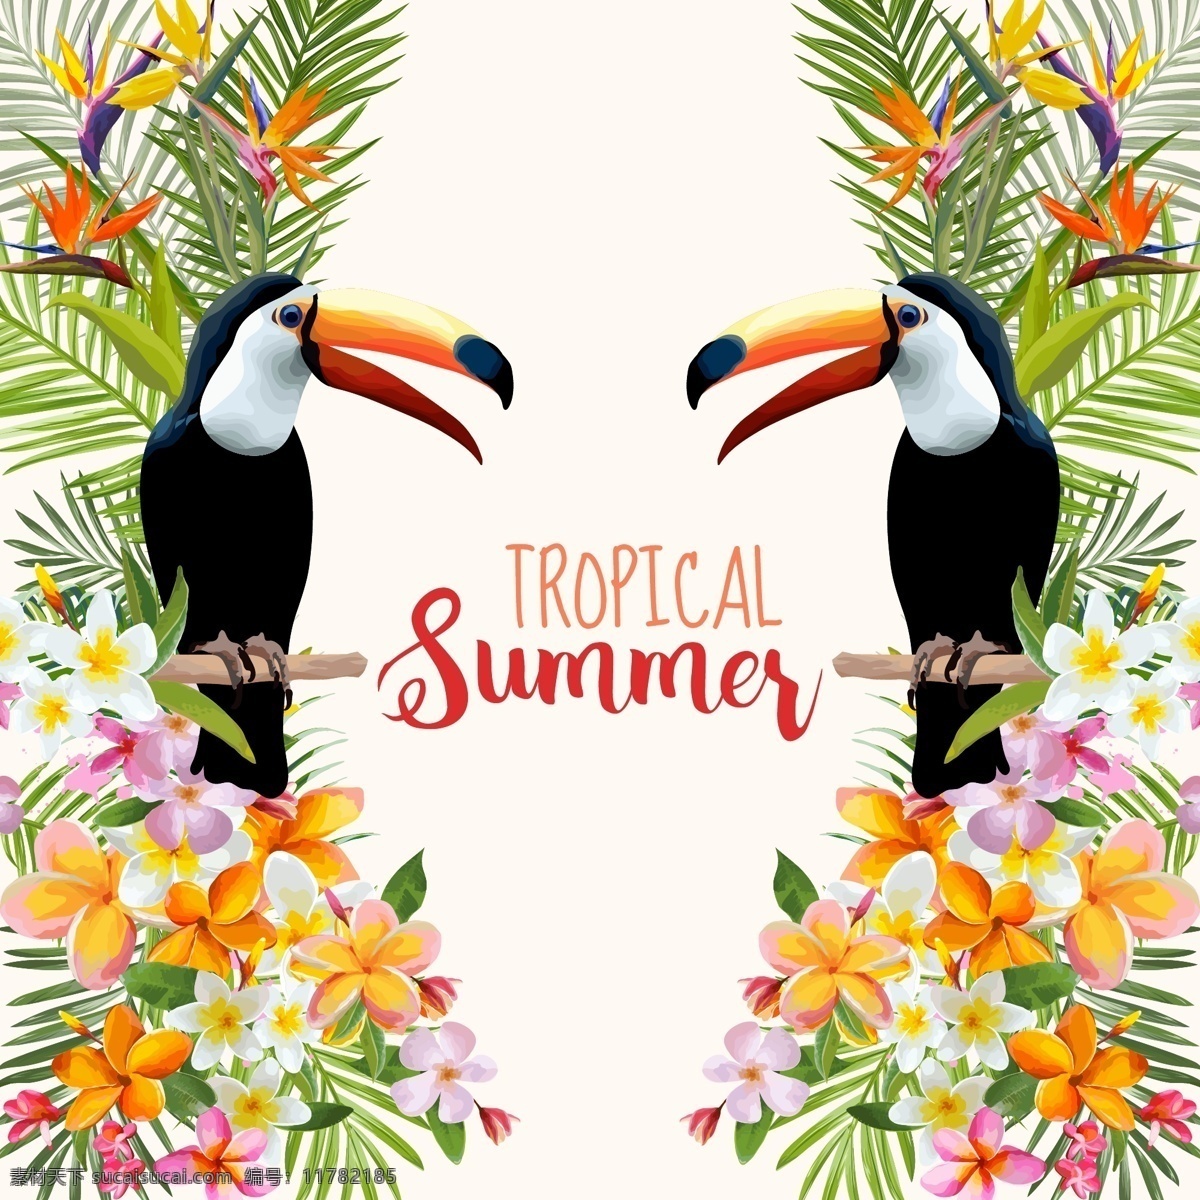 夏天 对称 海报 鹦鹉 花卉 纹理 背景 矢量 黄色 花朵 summer 夏威夷 卡通 插画 填充 广告 包装 印刷